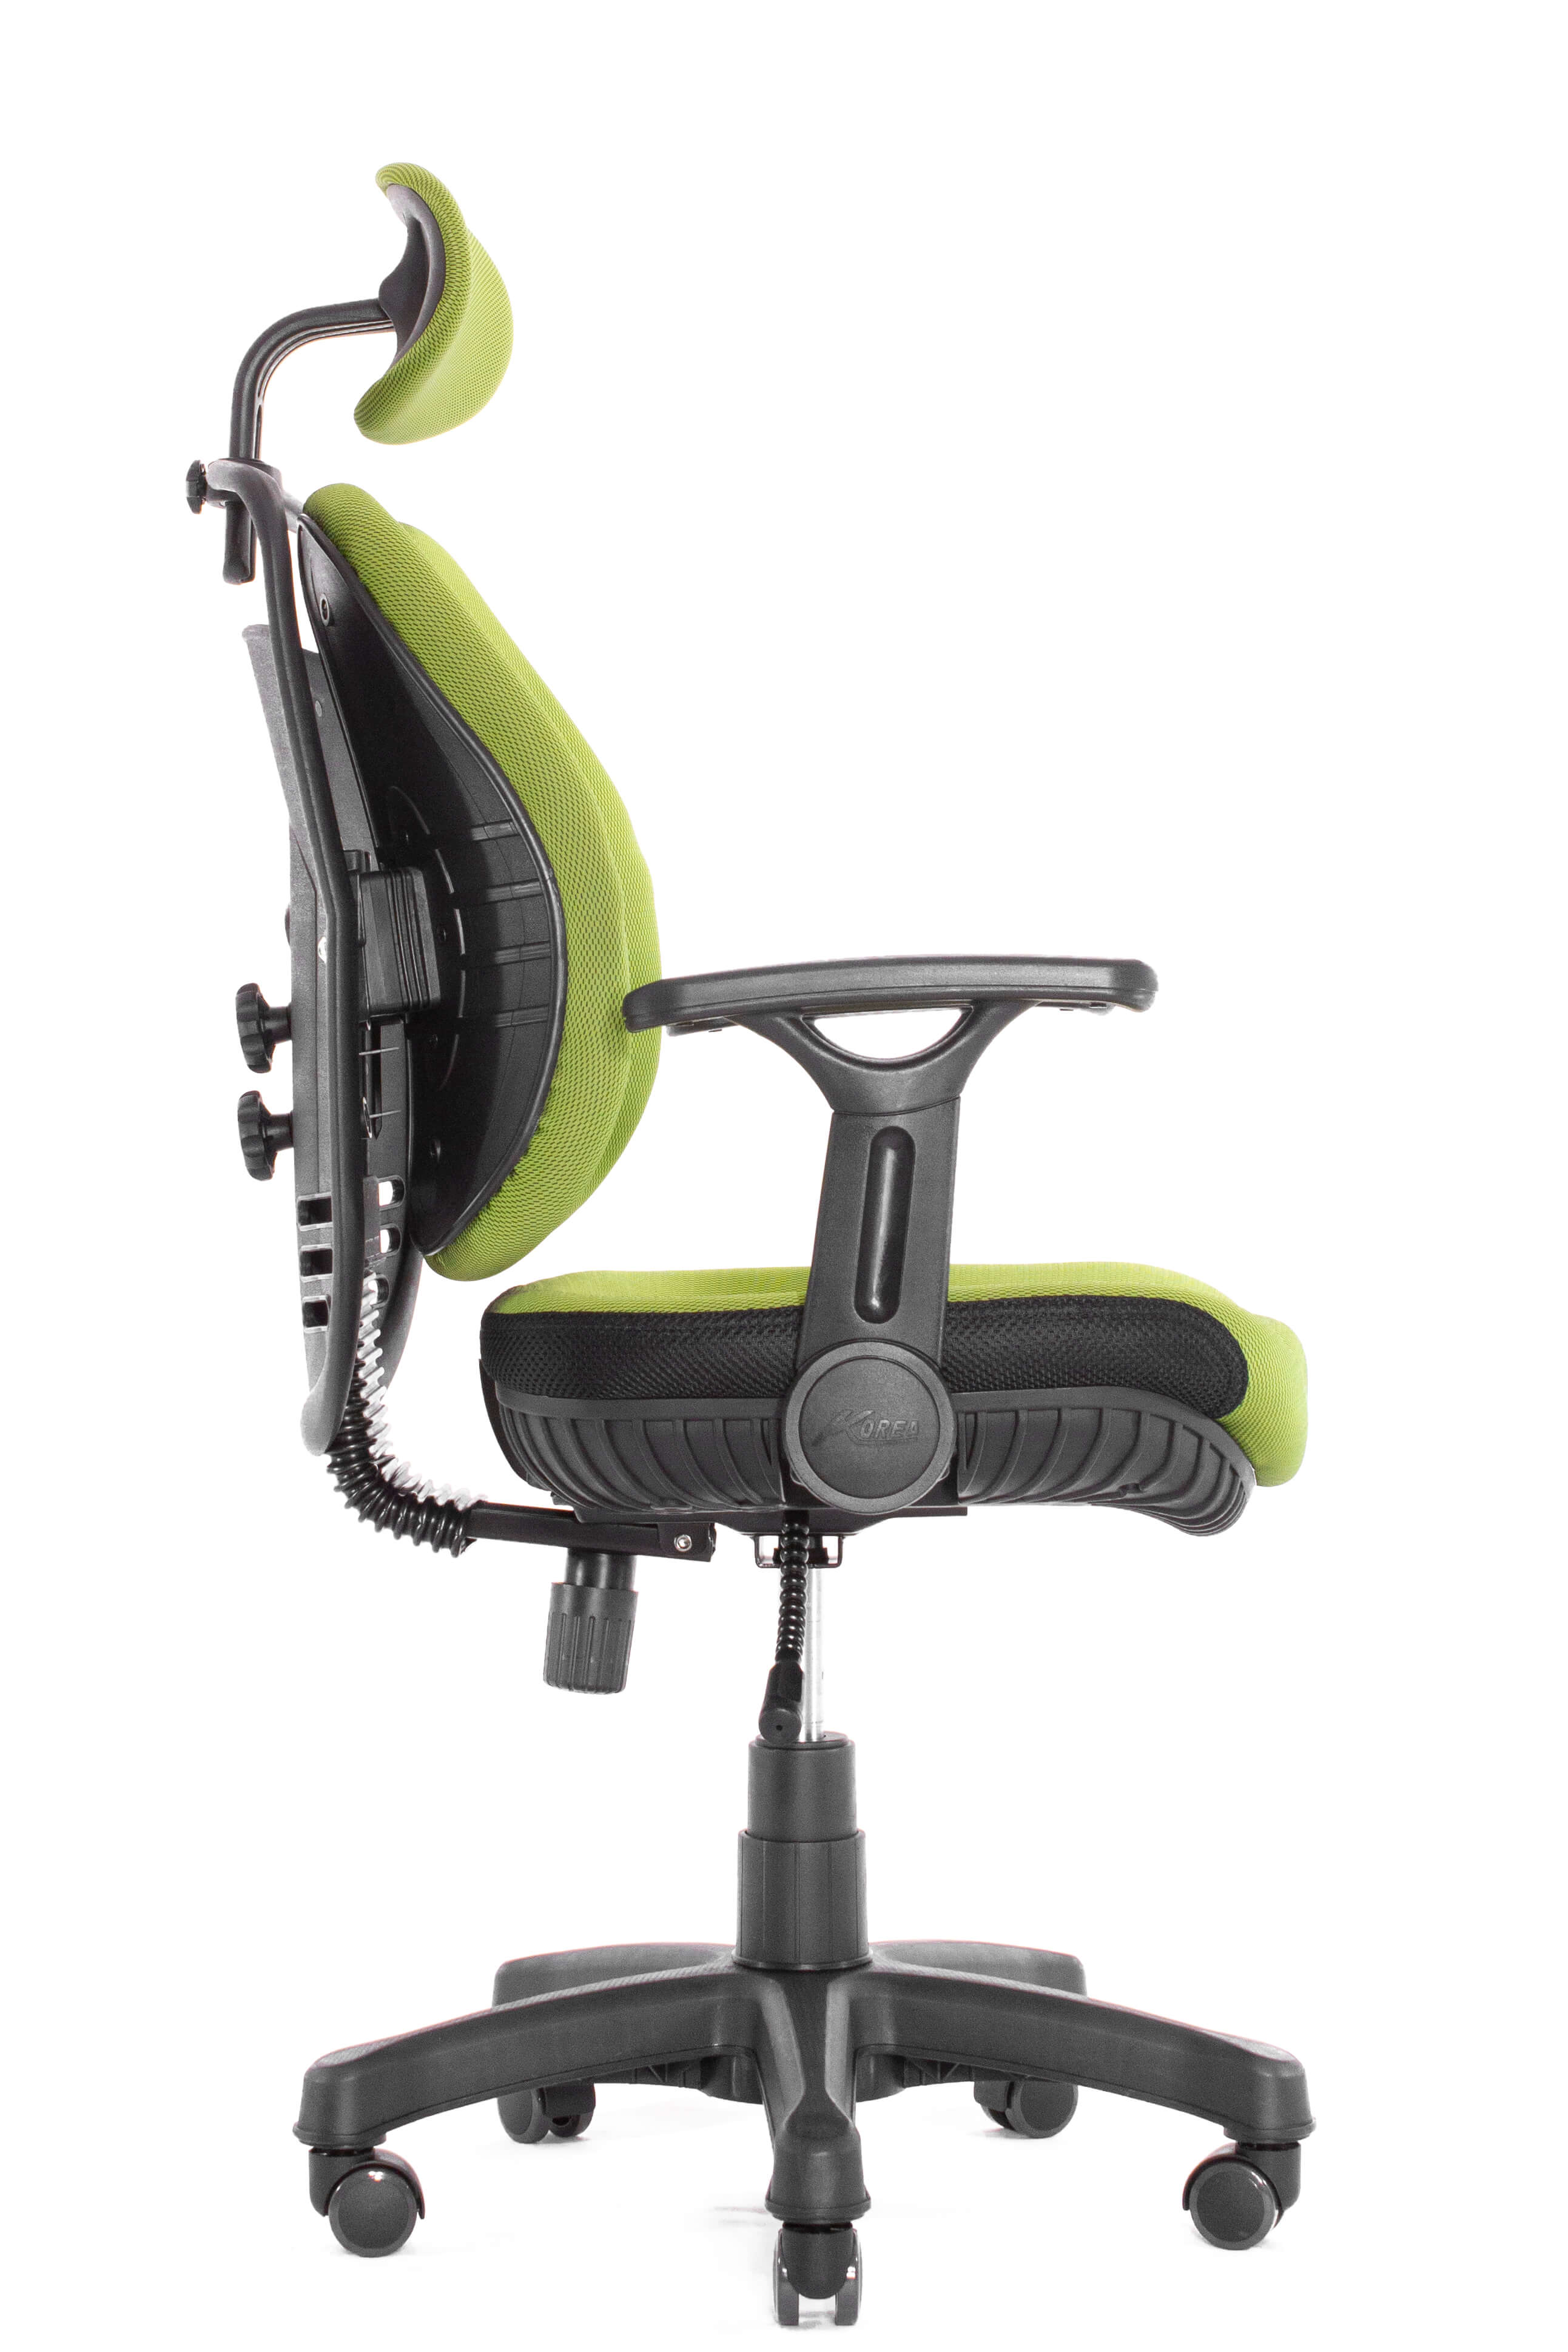 Ортопедическое кресло Falto Inno Health SY-0901 GN (каркас черный / спинка ткань зеленая / сиденье ткань зеленая)